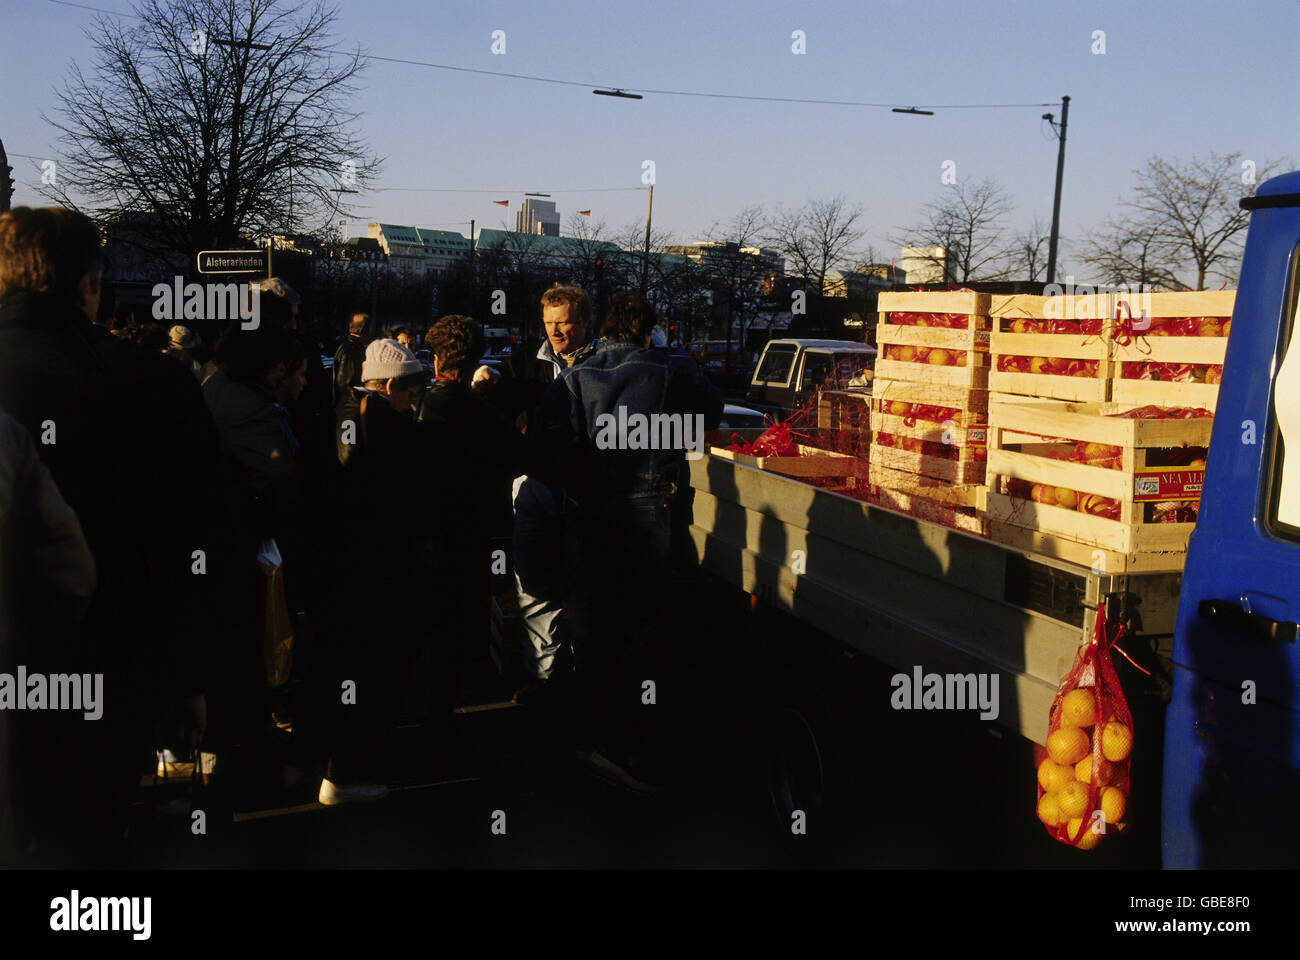 Géographie / Voyage, Allemagne, visiteurs de l'Allemagne de l'est à Hambourg, vente de fruits à Jungfernstieg, novembre 1989, droits supplémentaires-Clearences-non disponible Banque D'Images